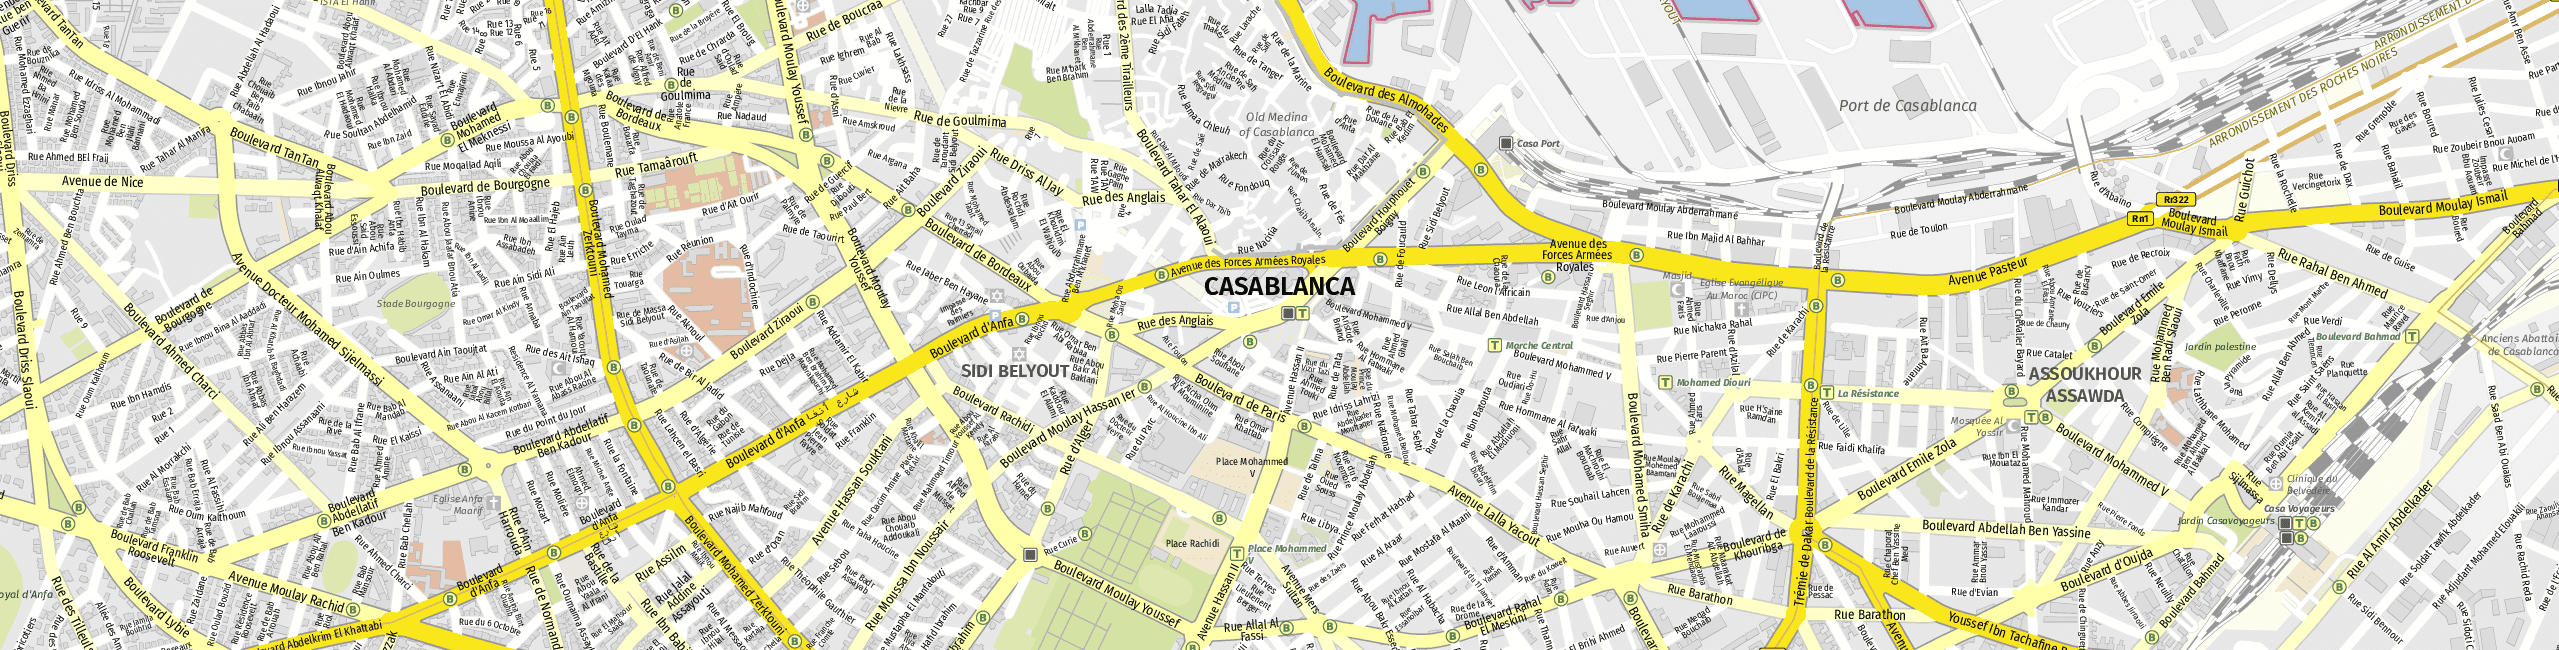 Stadtplan Casablanca zum Downloaden.